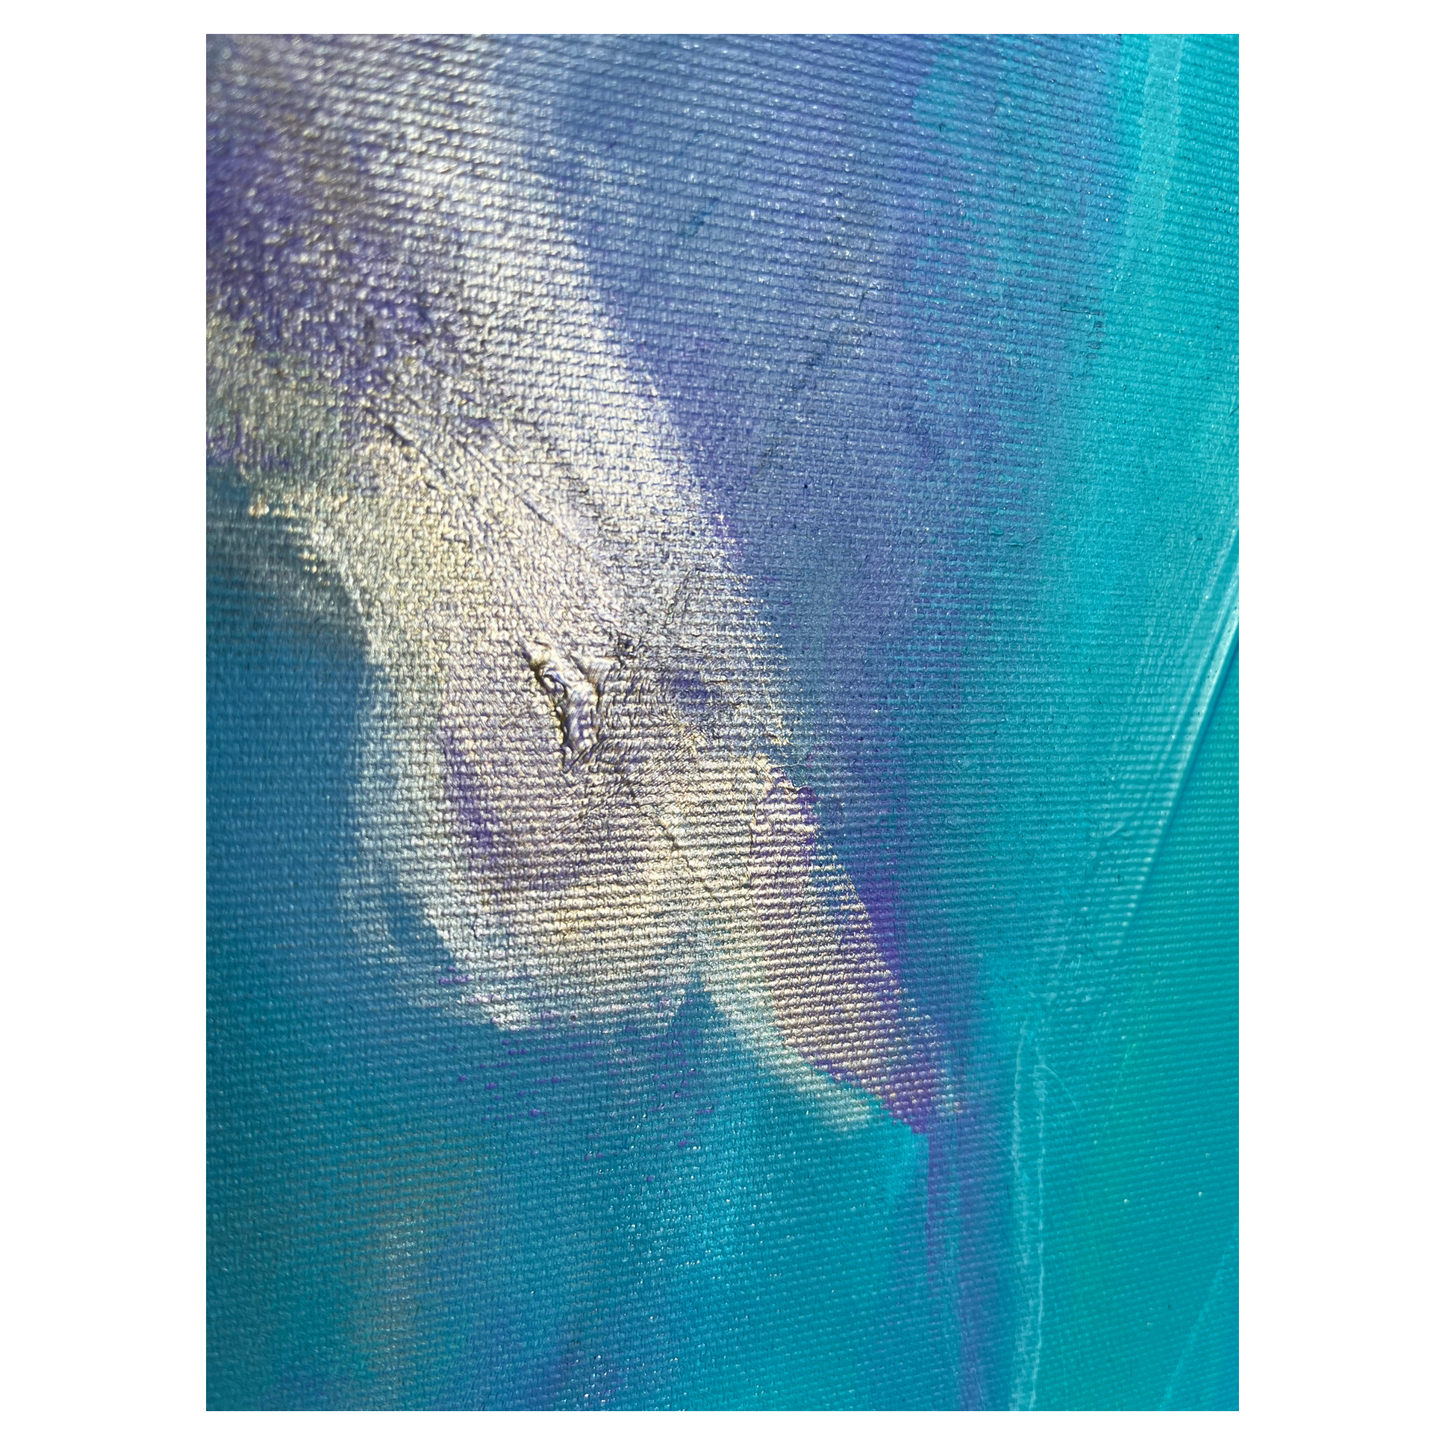 "Feel the Wave" Acryl auf Leinwand, Größe: 100 x 100 x 4,5 cm (BxHxT)